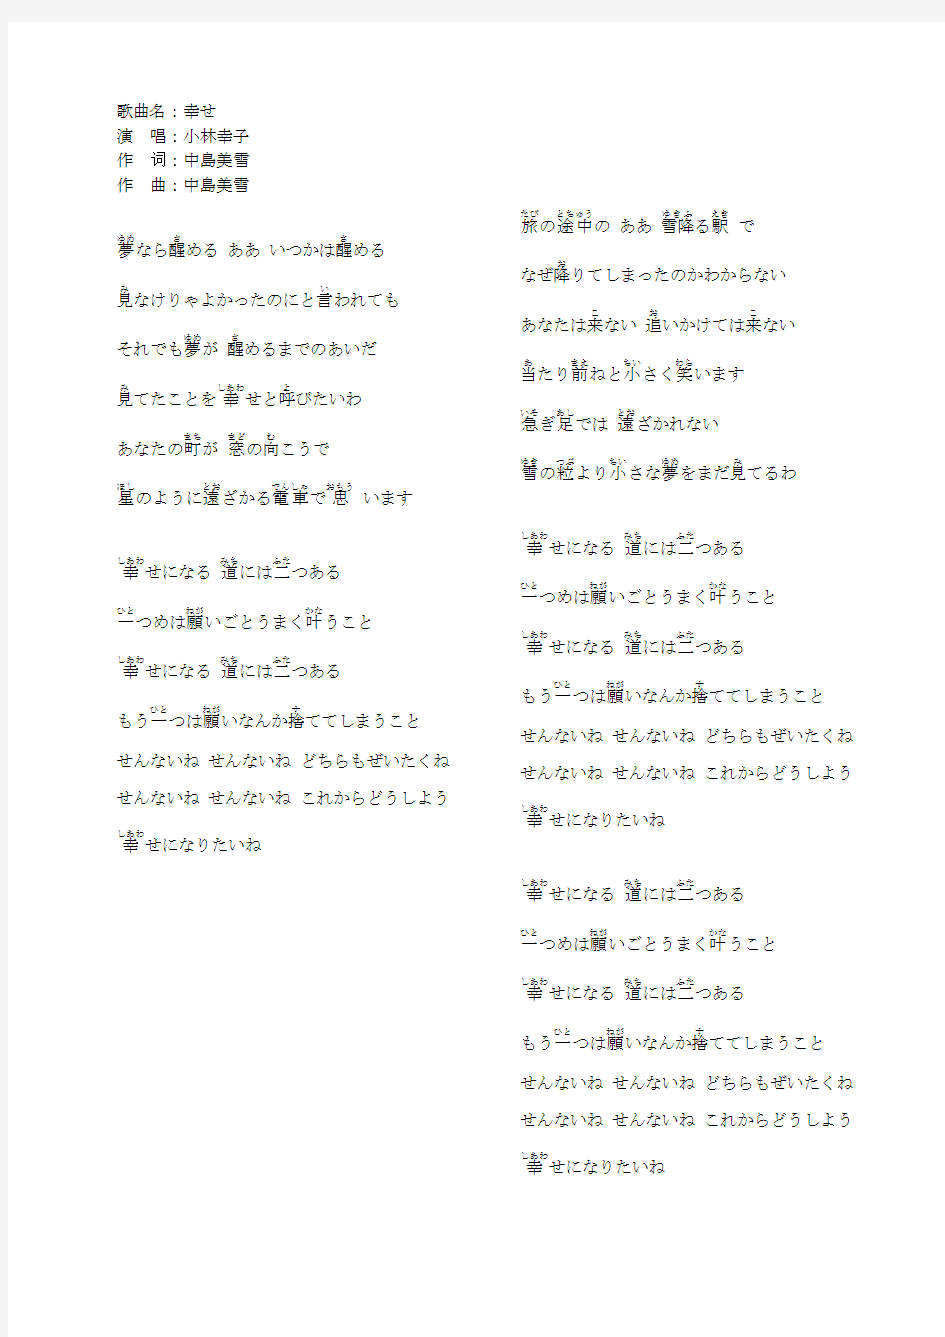 多首经典歌曲的日语原版 中岛美雪